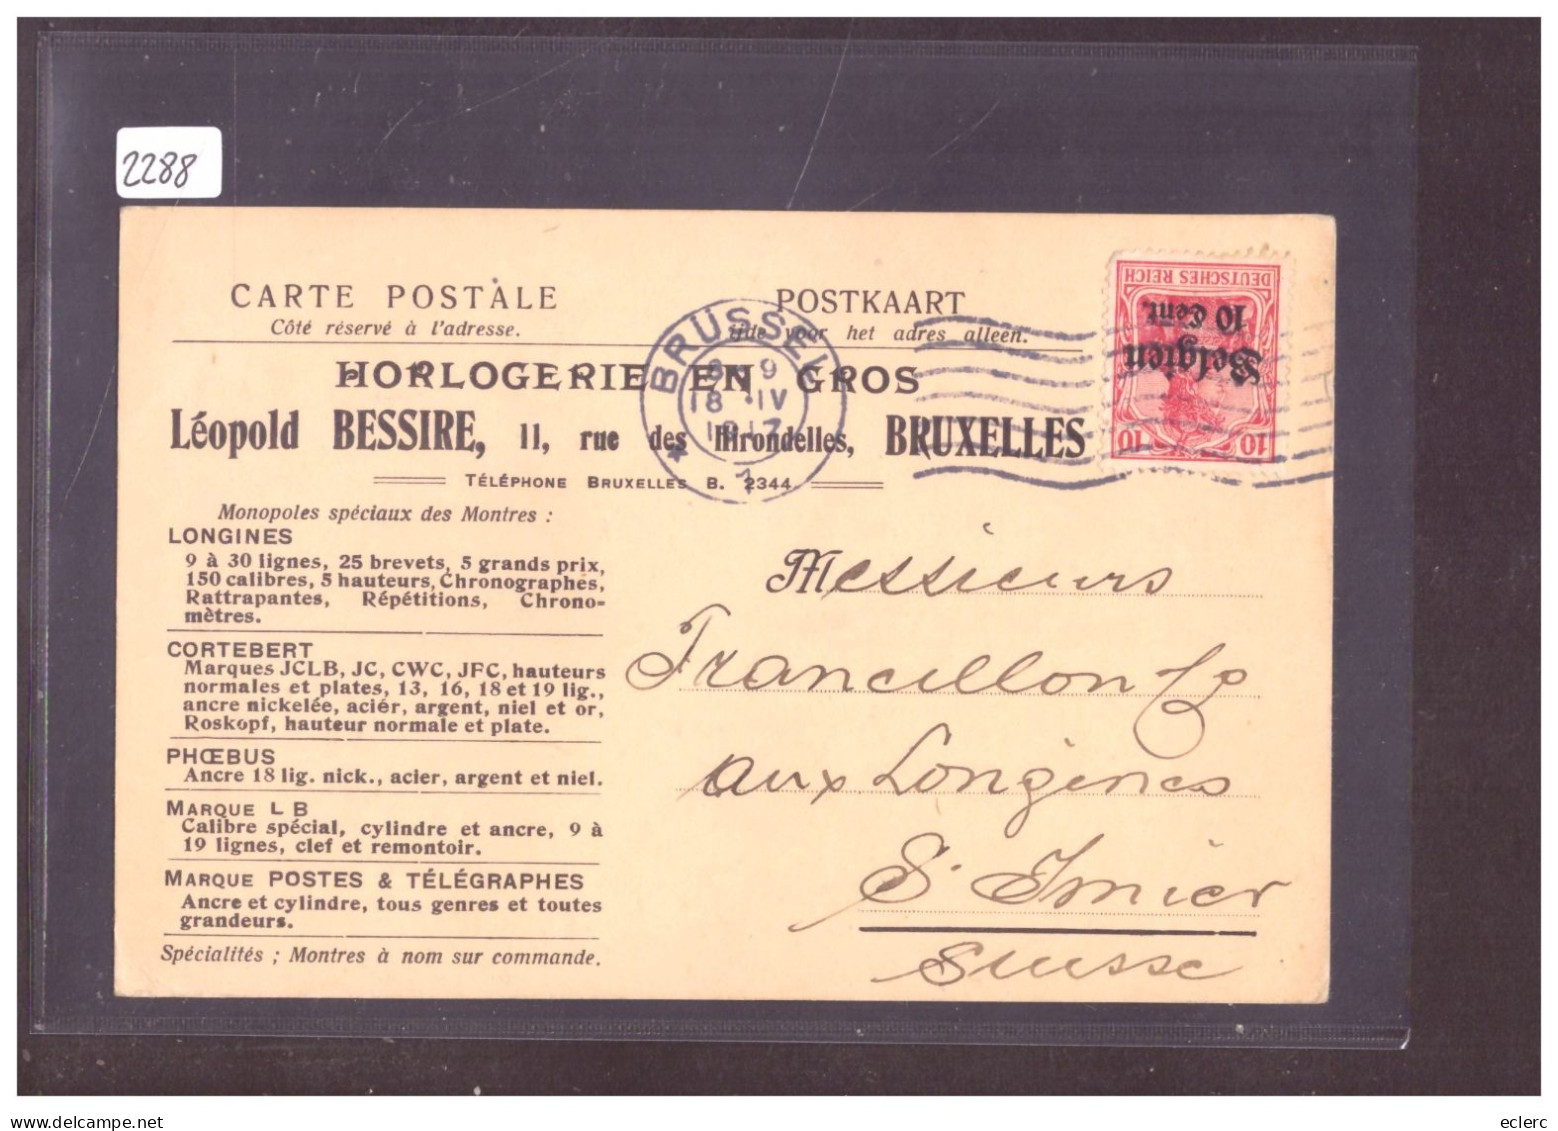 BELGIQUE ALLEMANDE - CARTE HORLOGERIE LEOPOLD BESSIRE, BRUXELLES  - ( WARNING: NO PAYPAL ) - OC38/54 Belgische Besetzung In Deutschland